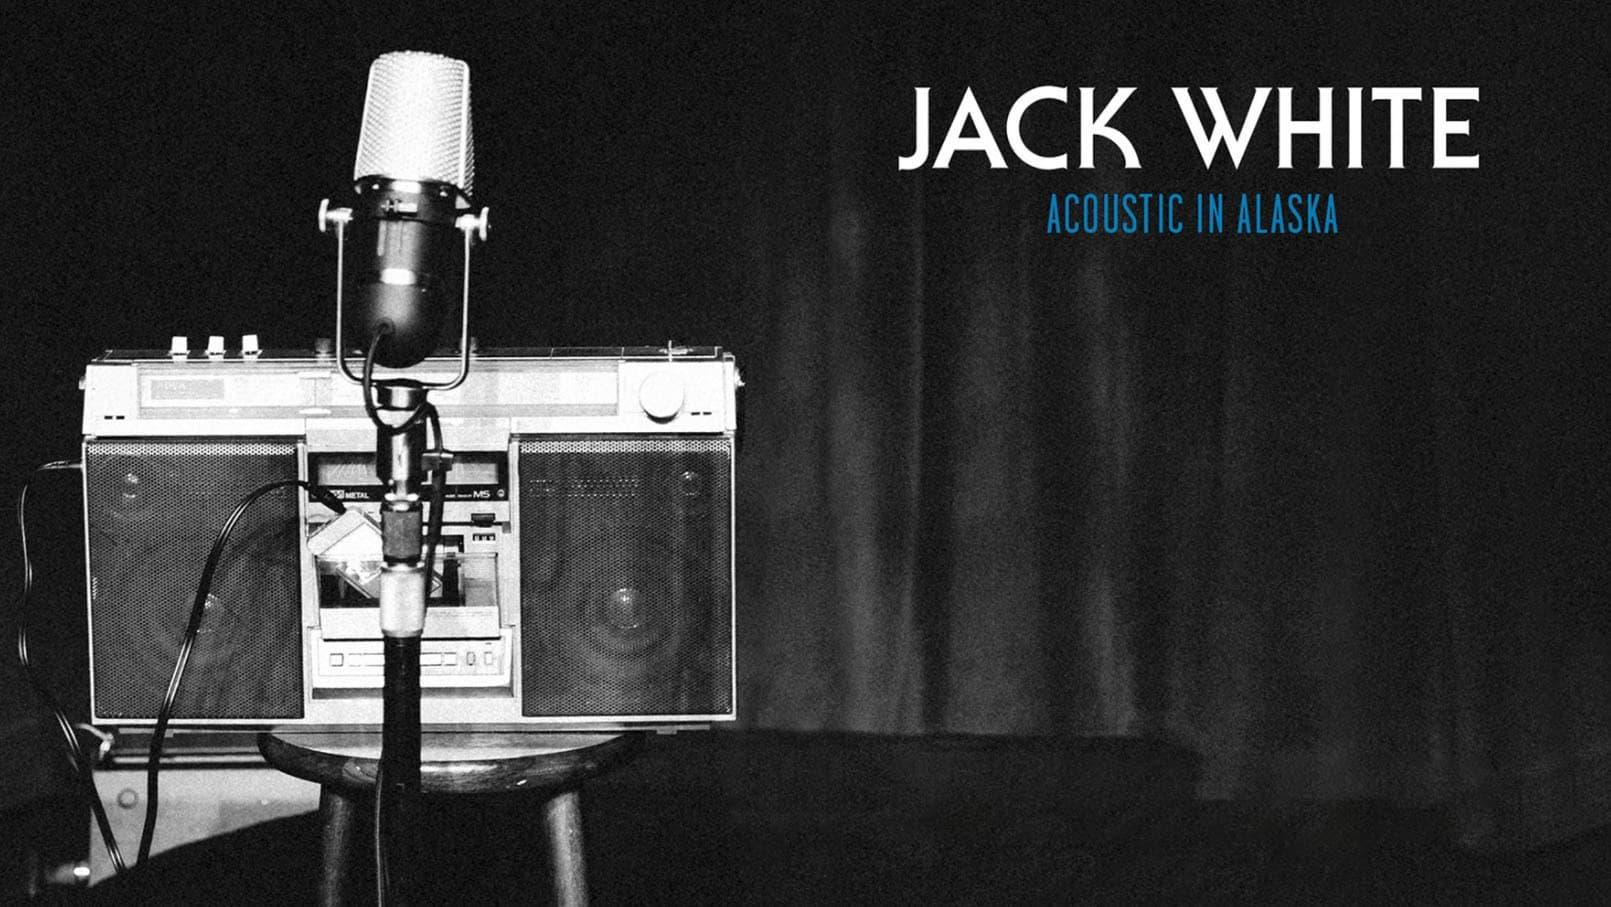 Jack White: Acoustic in Alaska backdrop